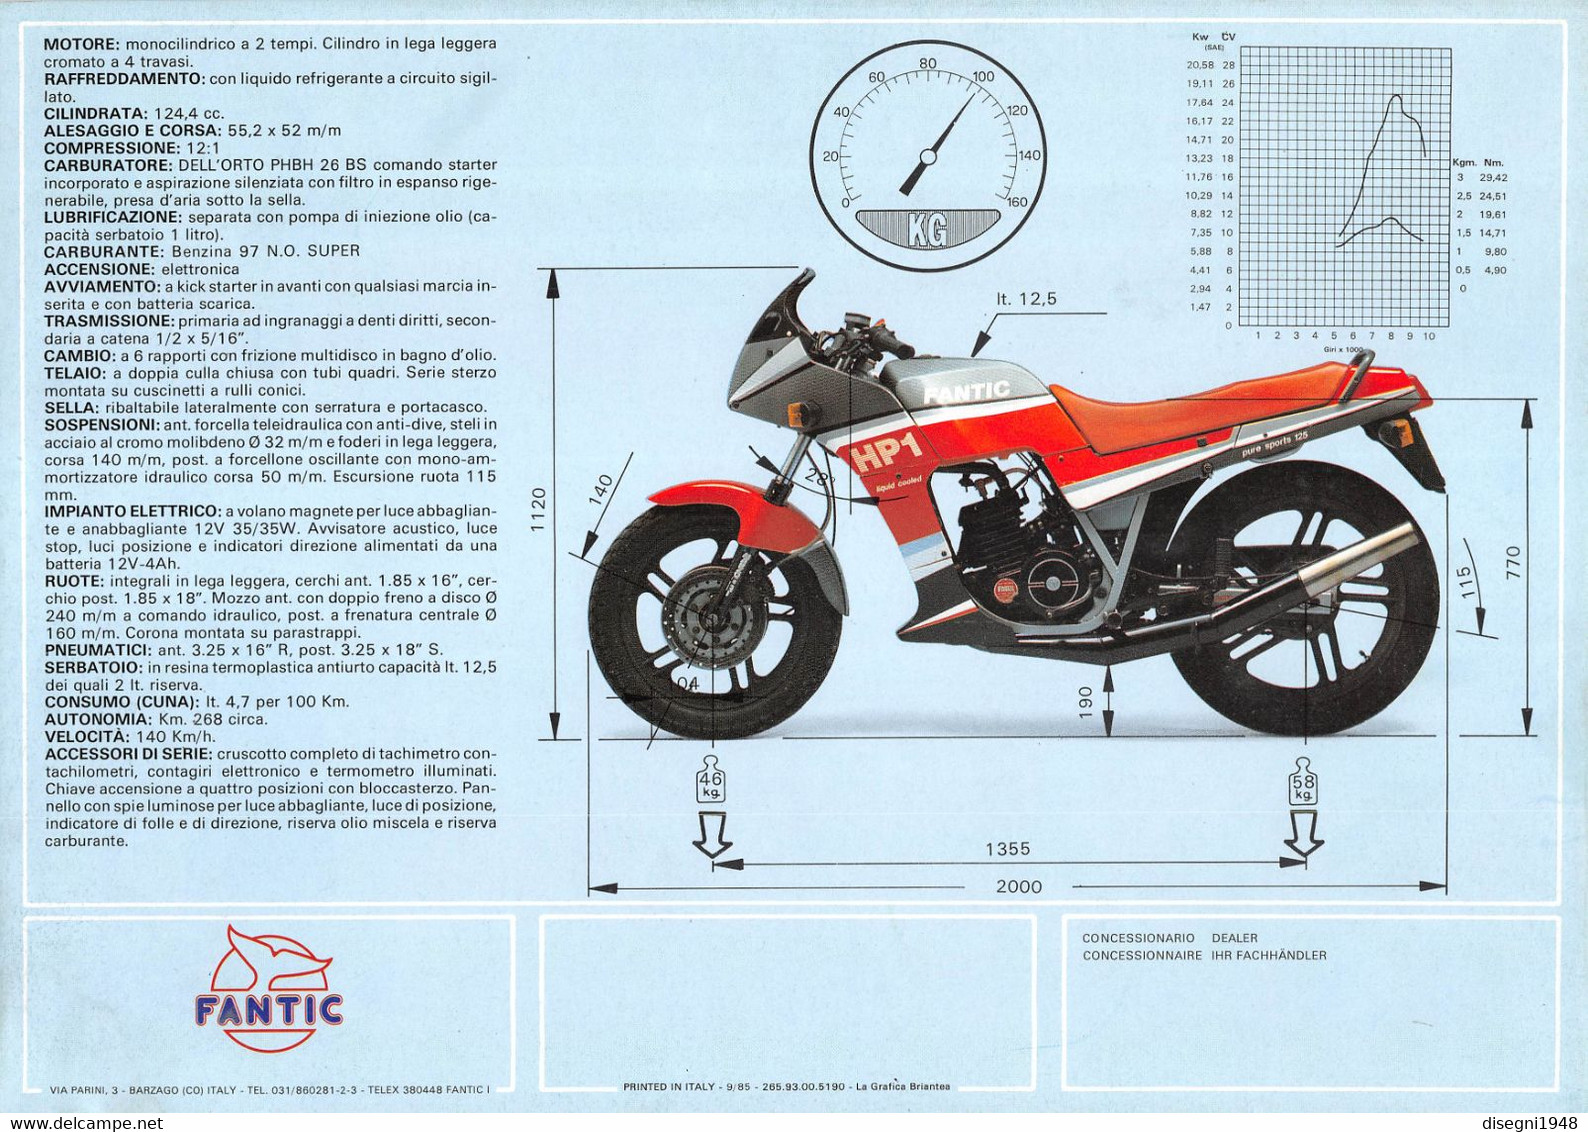 09871 "FANTIC 125 SPORT HP1"  VOLANTINO ILLUSTRATO ORIGINALE - Motorräder